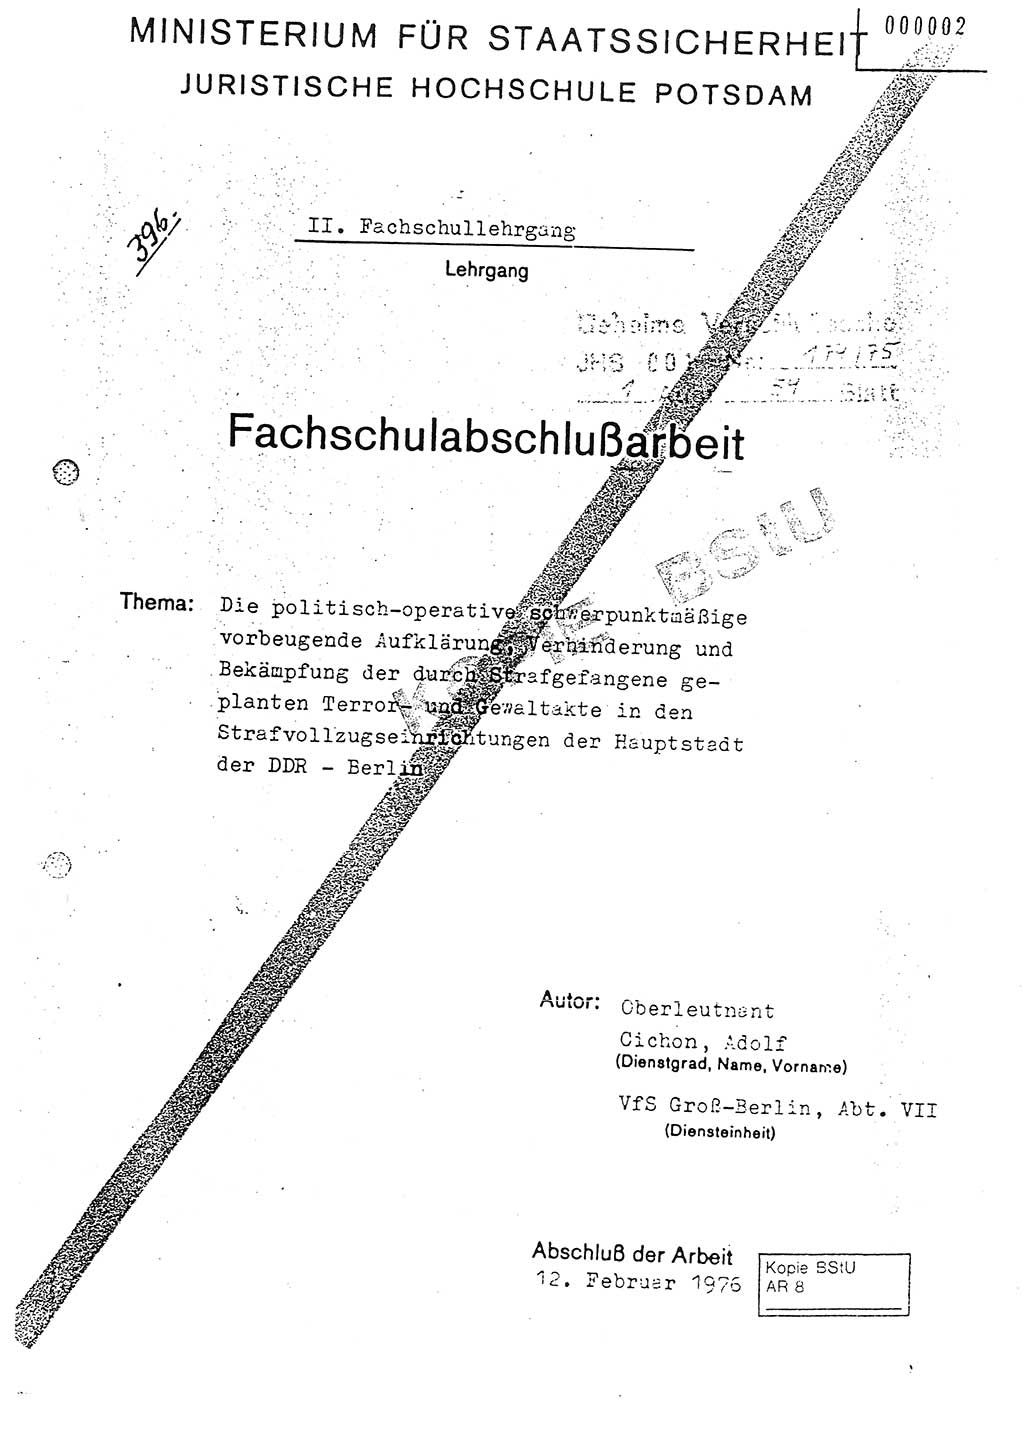 Fachschulabschlußarbeit Oberleutnant Adolf Cichon (Abt. Ⅶ), Ministerium für Staatssicherheit (MfS) [Deutsche Demokratische Republik (DDR)], Juristische Hochschule (JHS), Geheime Verschlußsache (GVS) 001-174/75, Potsdam 1976, Seite 1 (FS-Abschl.-Arb. MfS DDR JHS GVS 001-174/75 1976, S. 1)